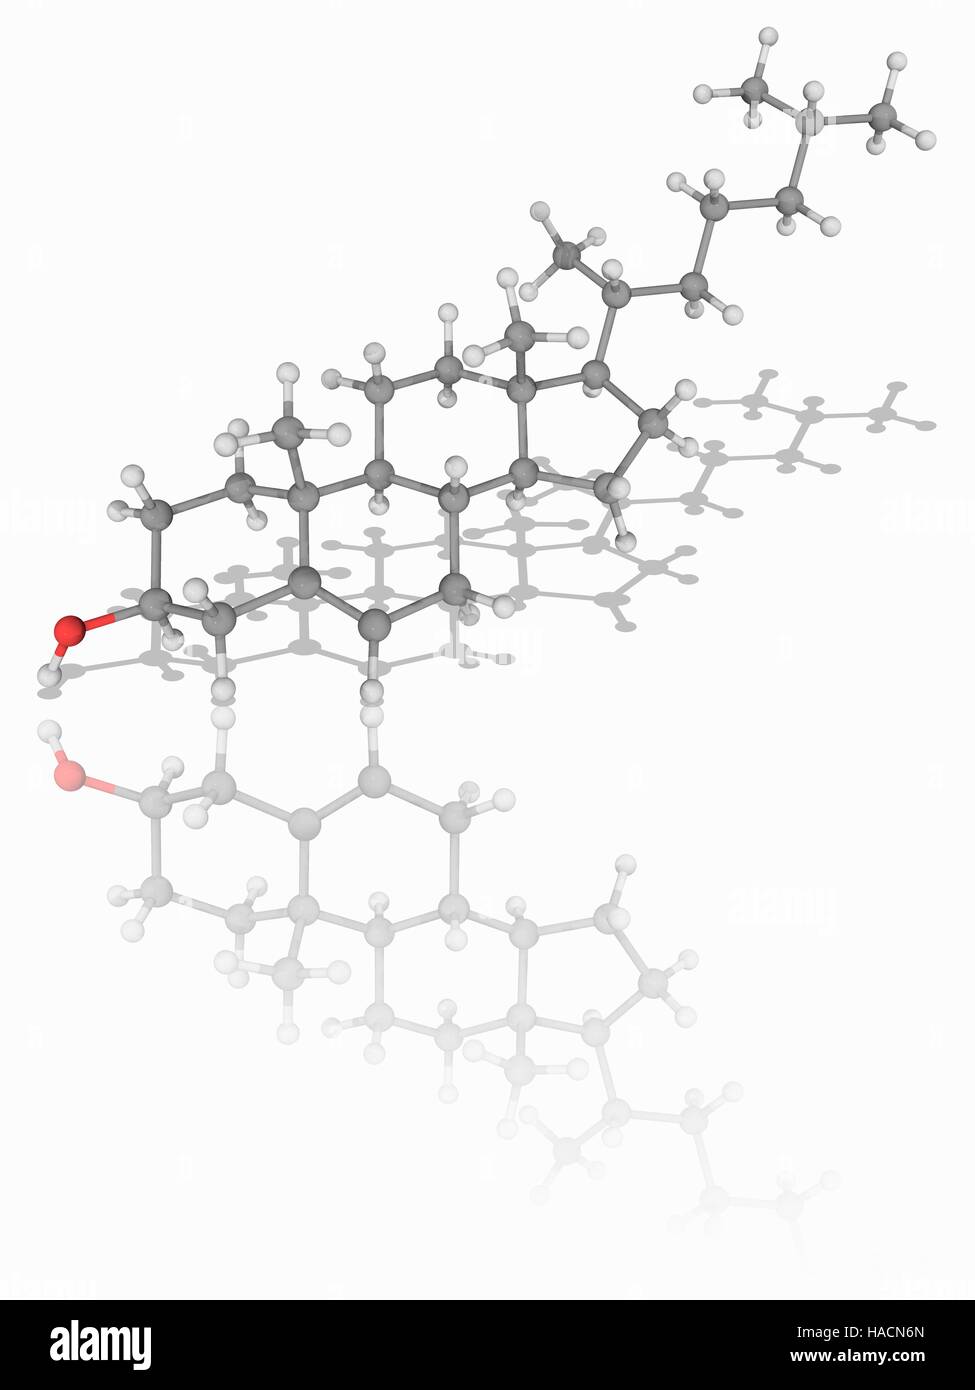 Colesterolo. Il modello molecolare di sterolo conosciuto come colesterolo (C27.H46.o.). Gli steroli sono un tipo di lipidi, una classe di composti biochimici che include i grassi. Il colesterolo è un componente essenziale delle membrane cellulari di mammiferi e i livelli di colesterolo nel sangue è un importante indicatore di salute. Gli atomi sono rappresentati da sfere e sono codificati a colori: carbonio (grigio), Idrogeno (bianco) e ossigeno (rosso). Illustrazione. Foto Stock